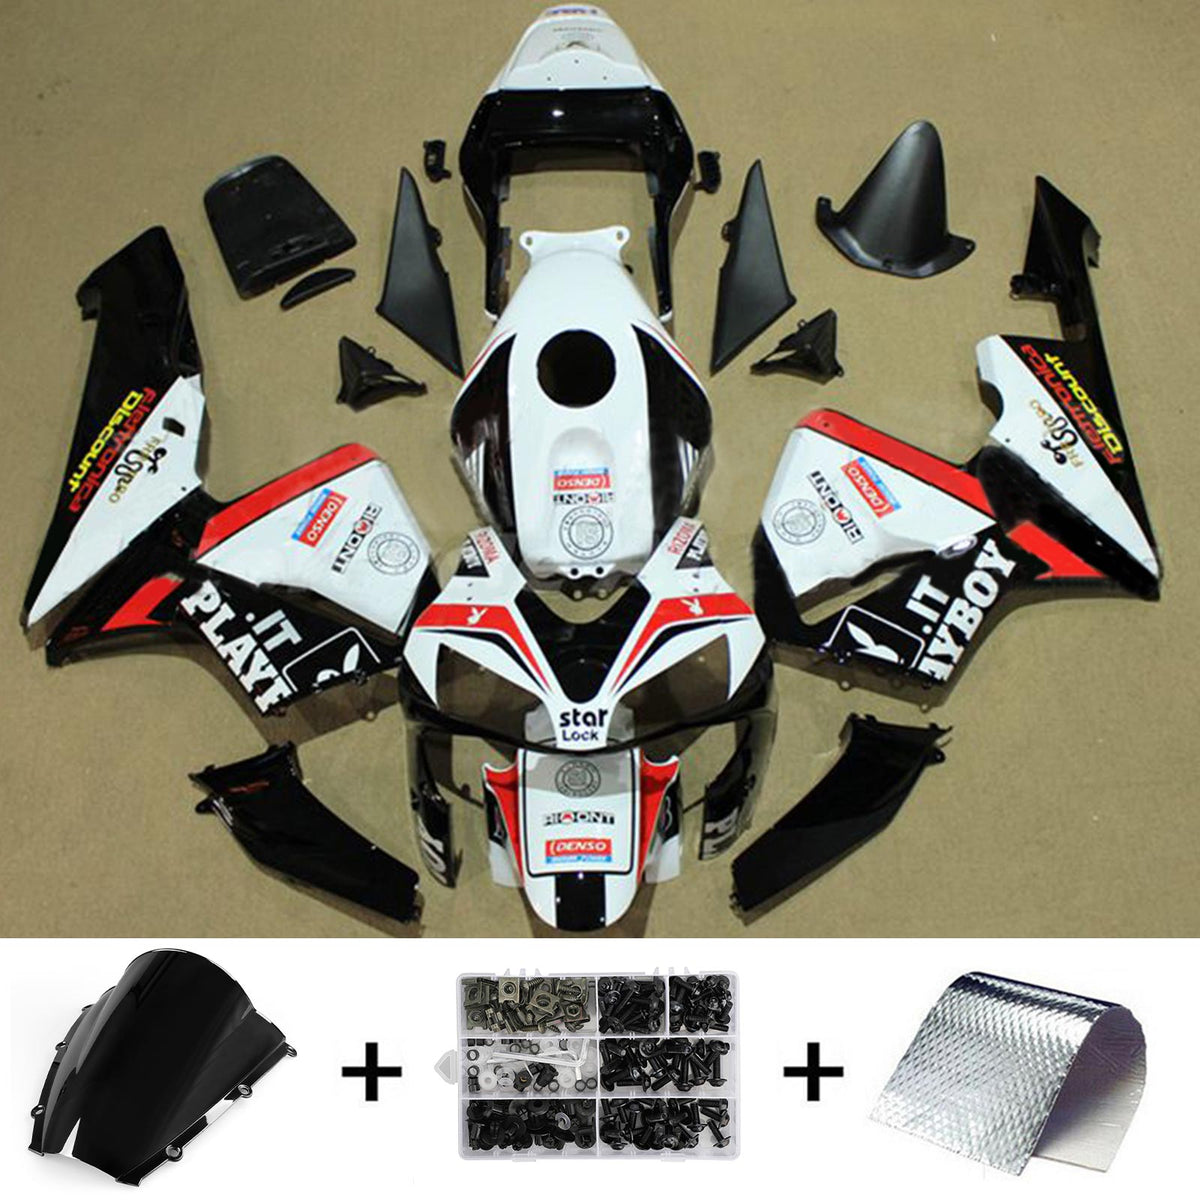 Kit carena Amotopart 2003-2004 Honda CBR600RR bianco nero rosso